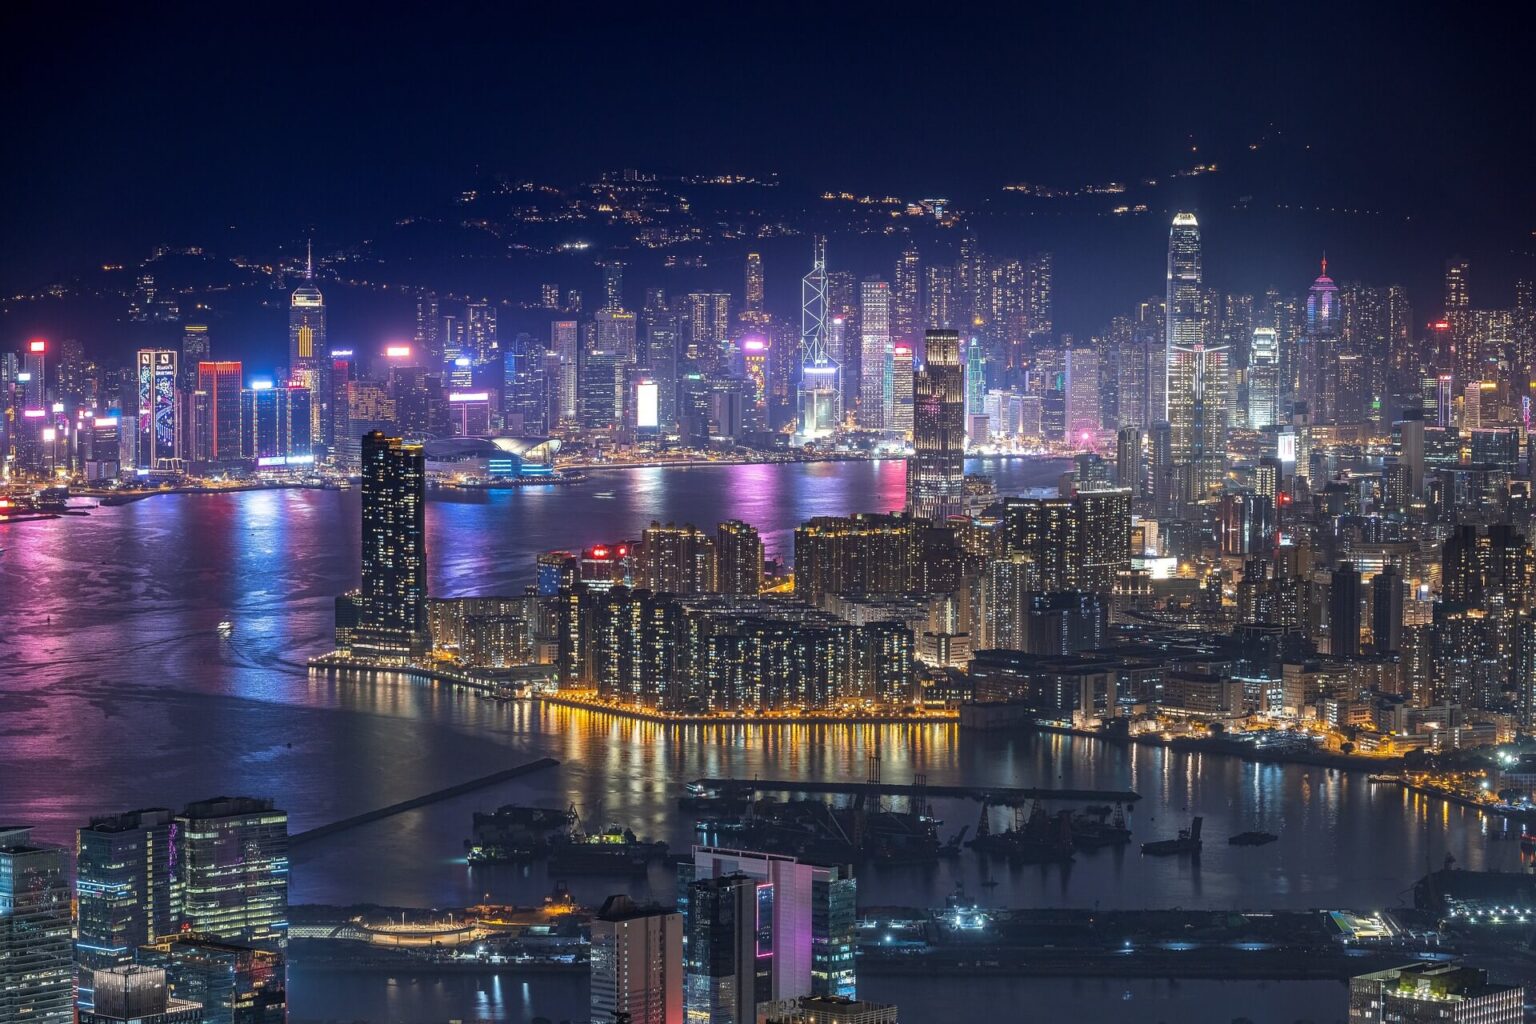 Hongkong überdenkt Regulierung von Krypto-Assets